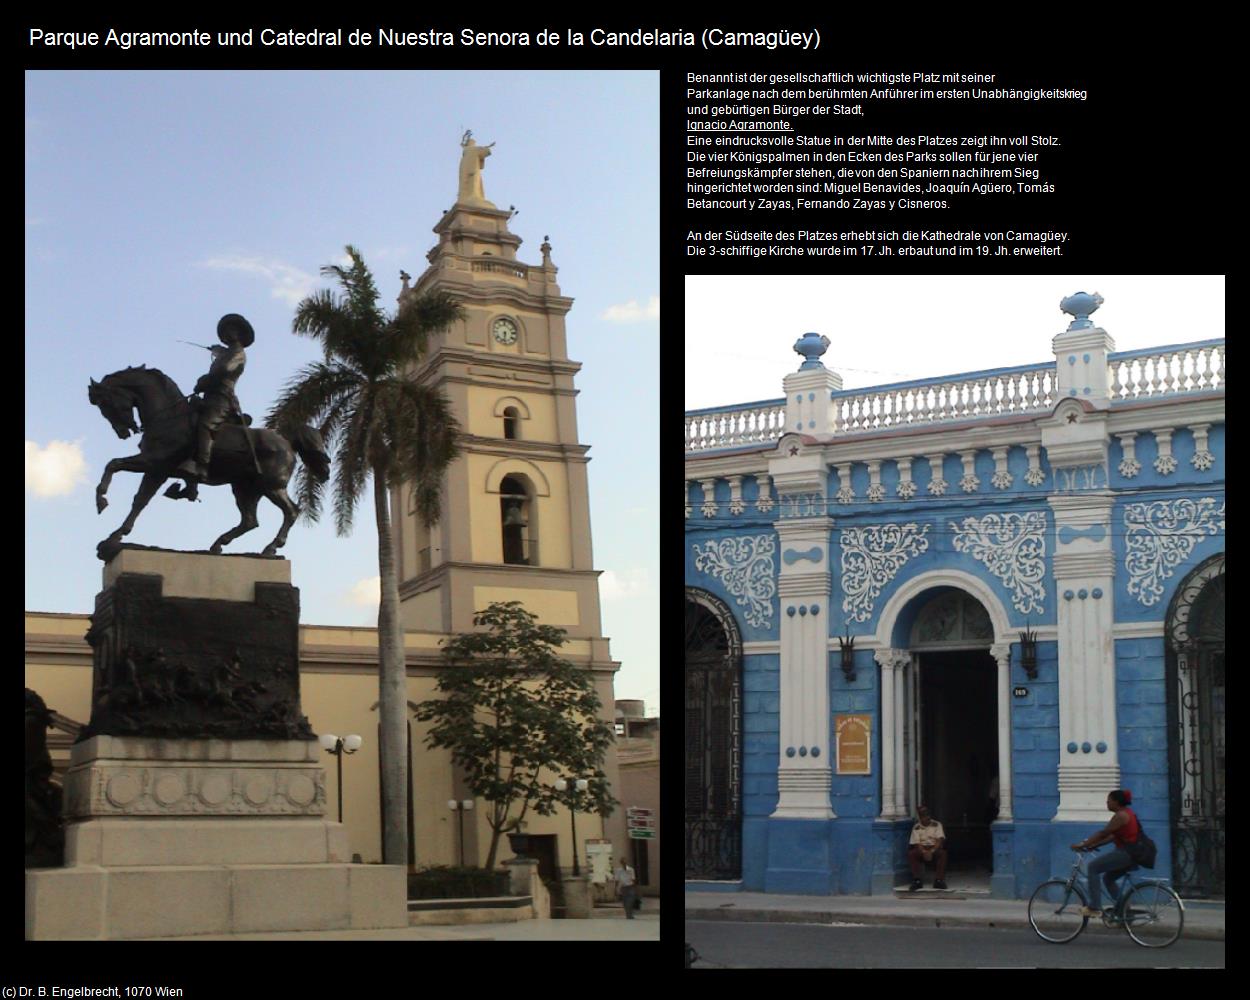 Parque Agramonte und Catedral de Nuestra Senora de la Candelaria (Camagüey) in KUBA(c)B.Engelbrecht